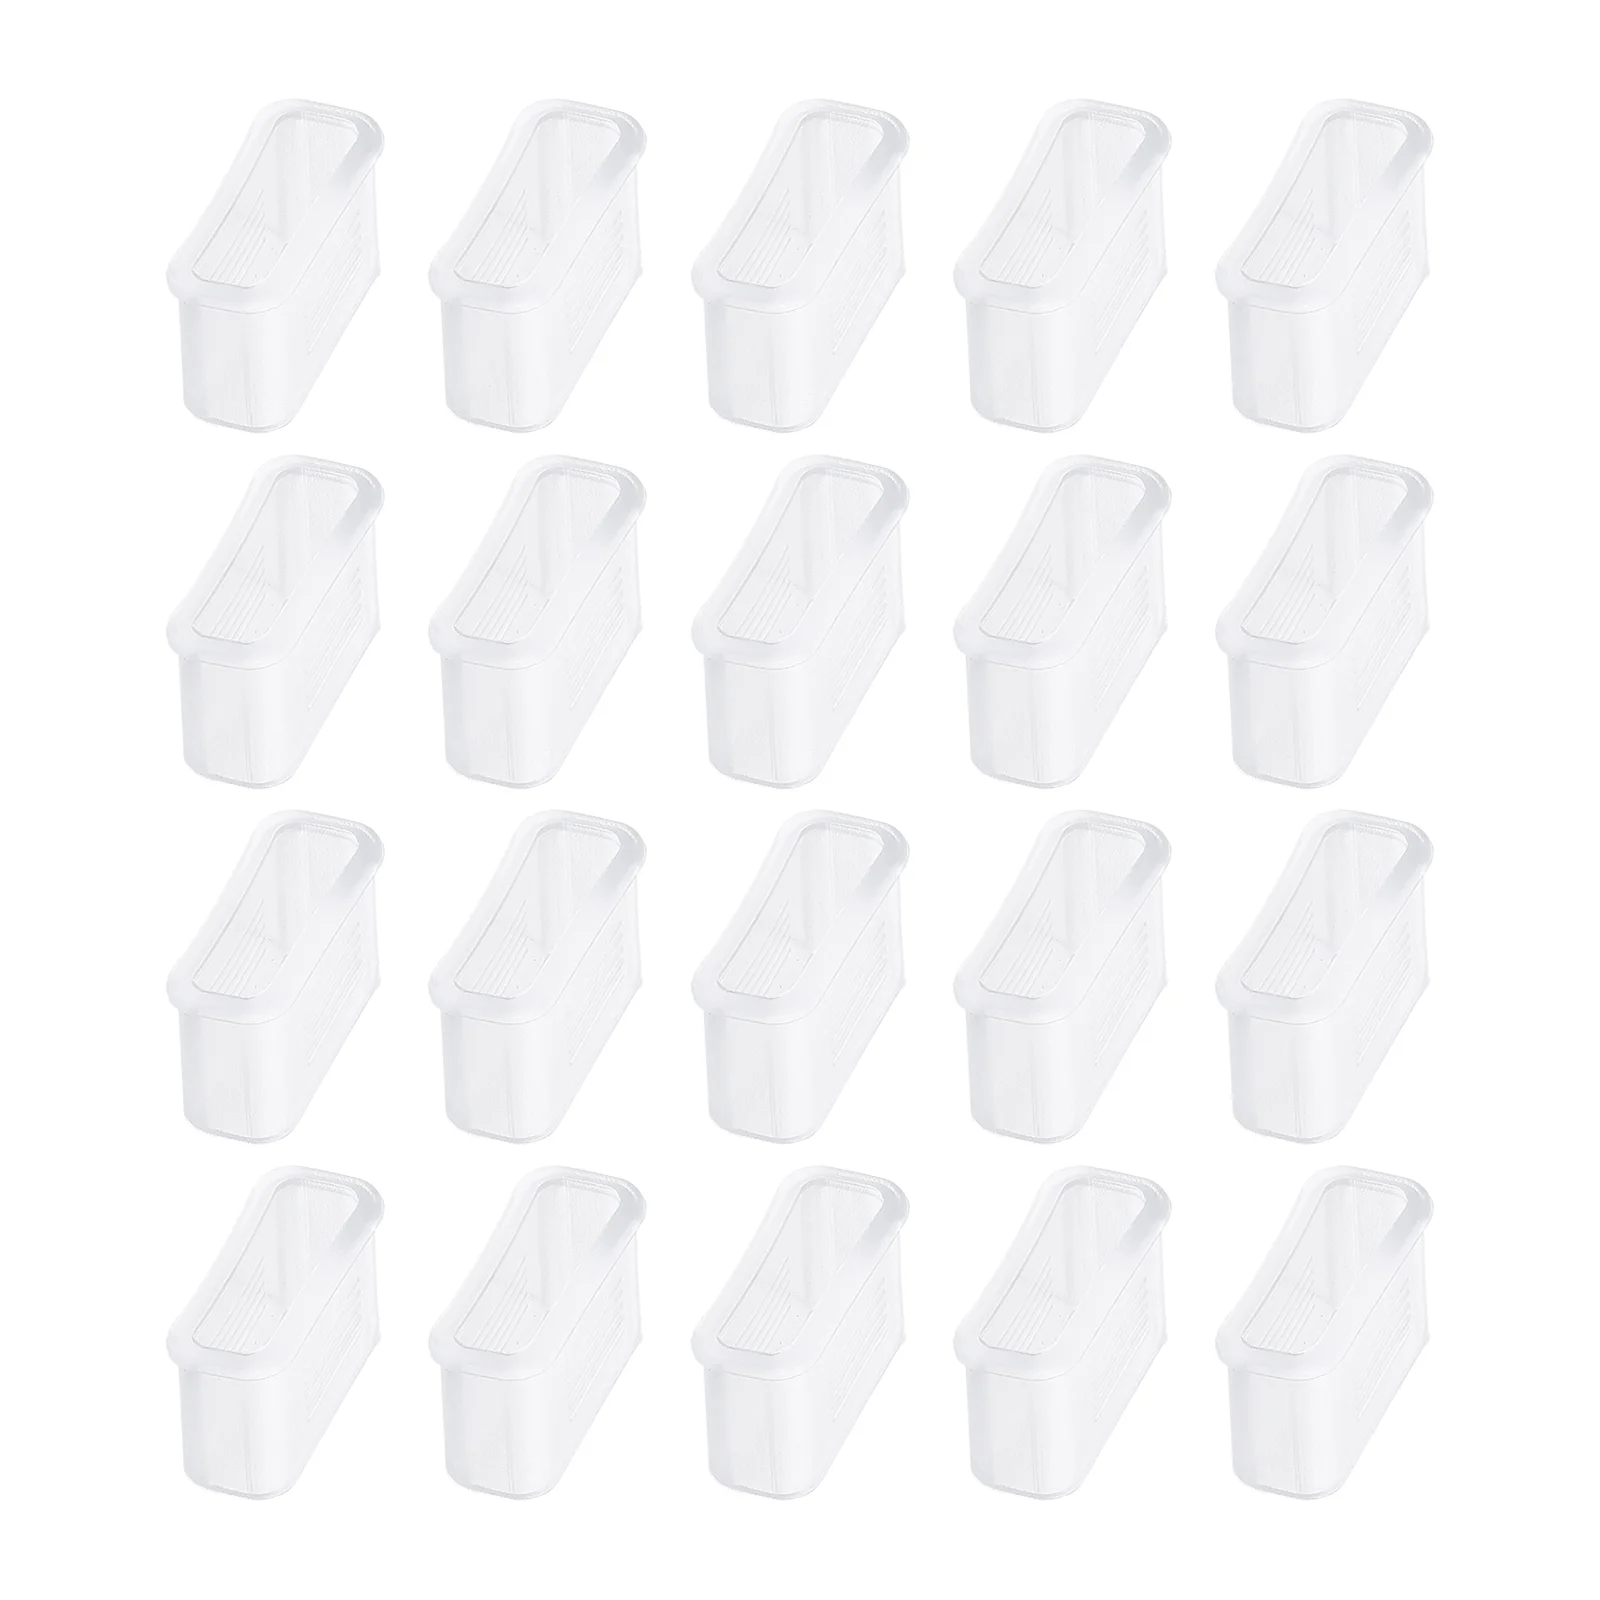 Пластиковые крышки со свистком, 20 шт. пластиковые крышки для барабана объемом 55 галлонов 20 комплектов